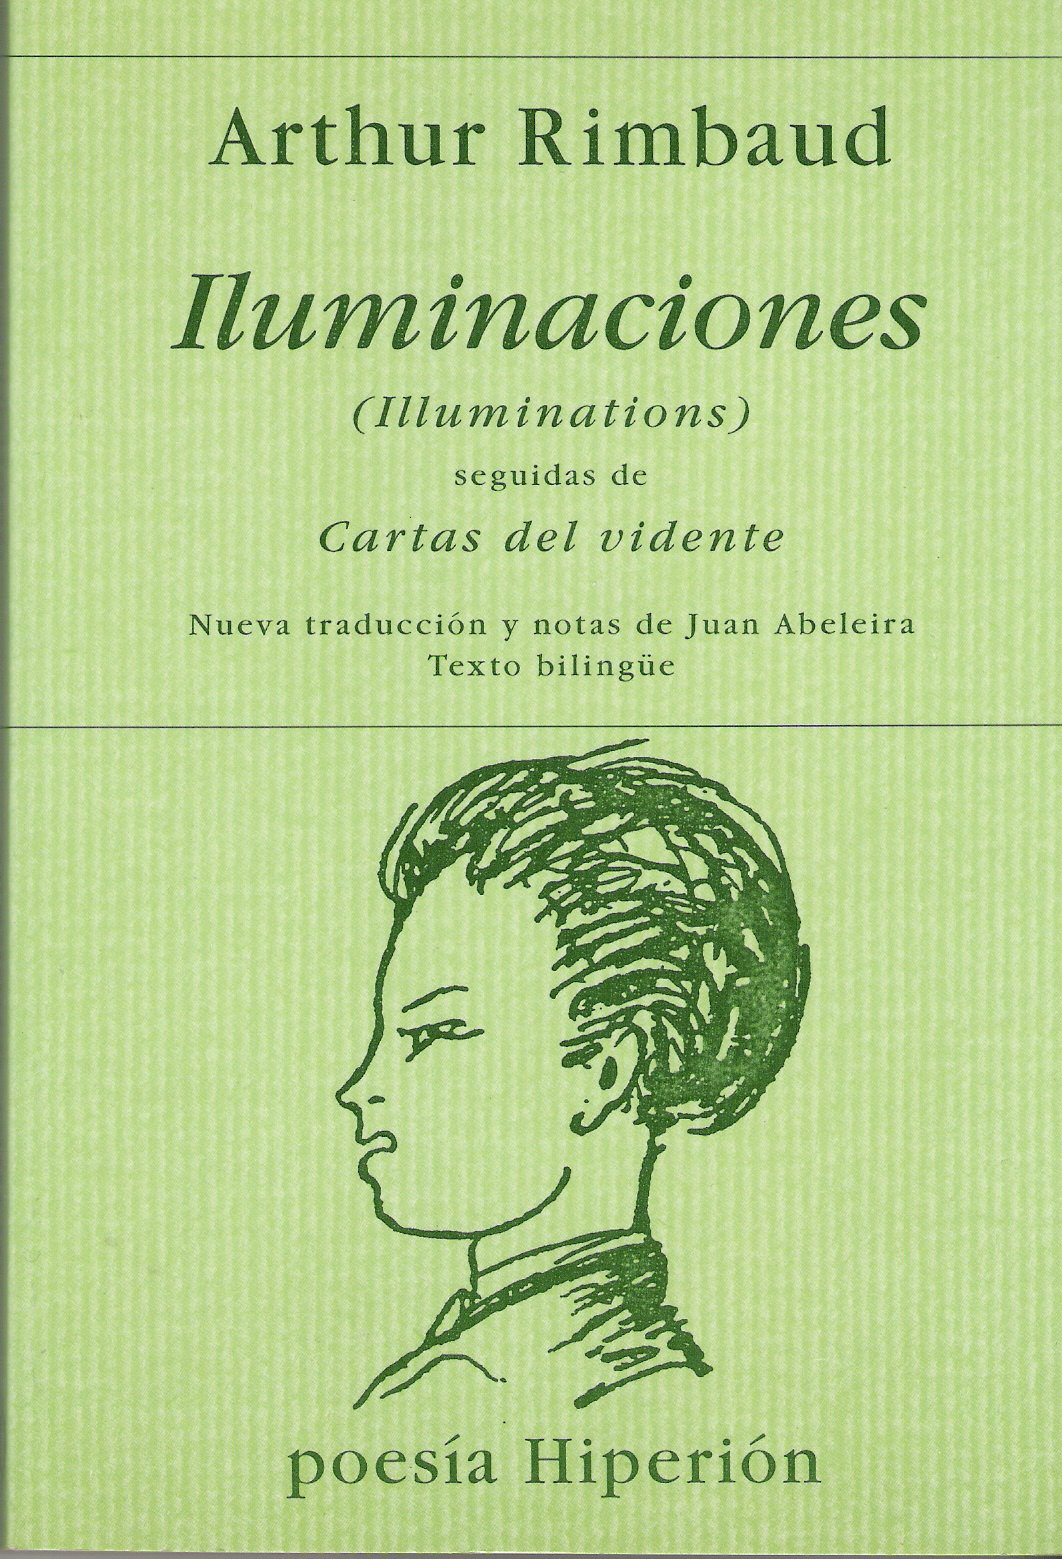 [Rimbaud+Iluminaciones.jpg]